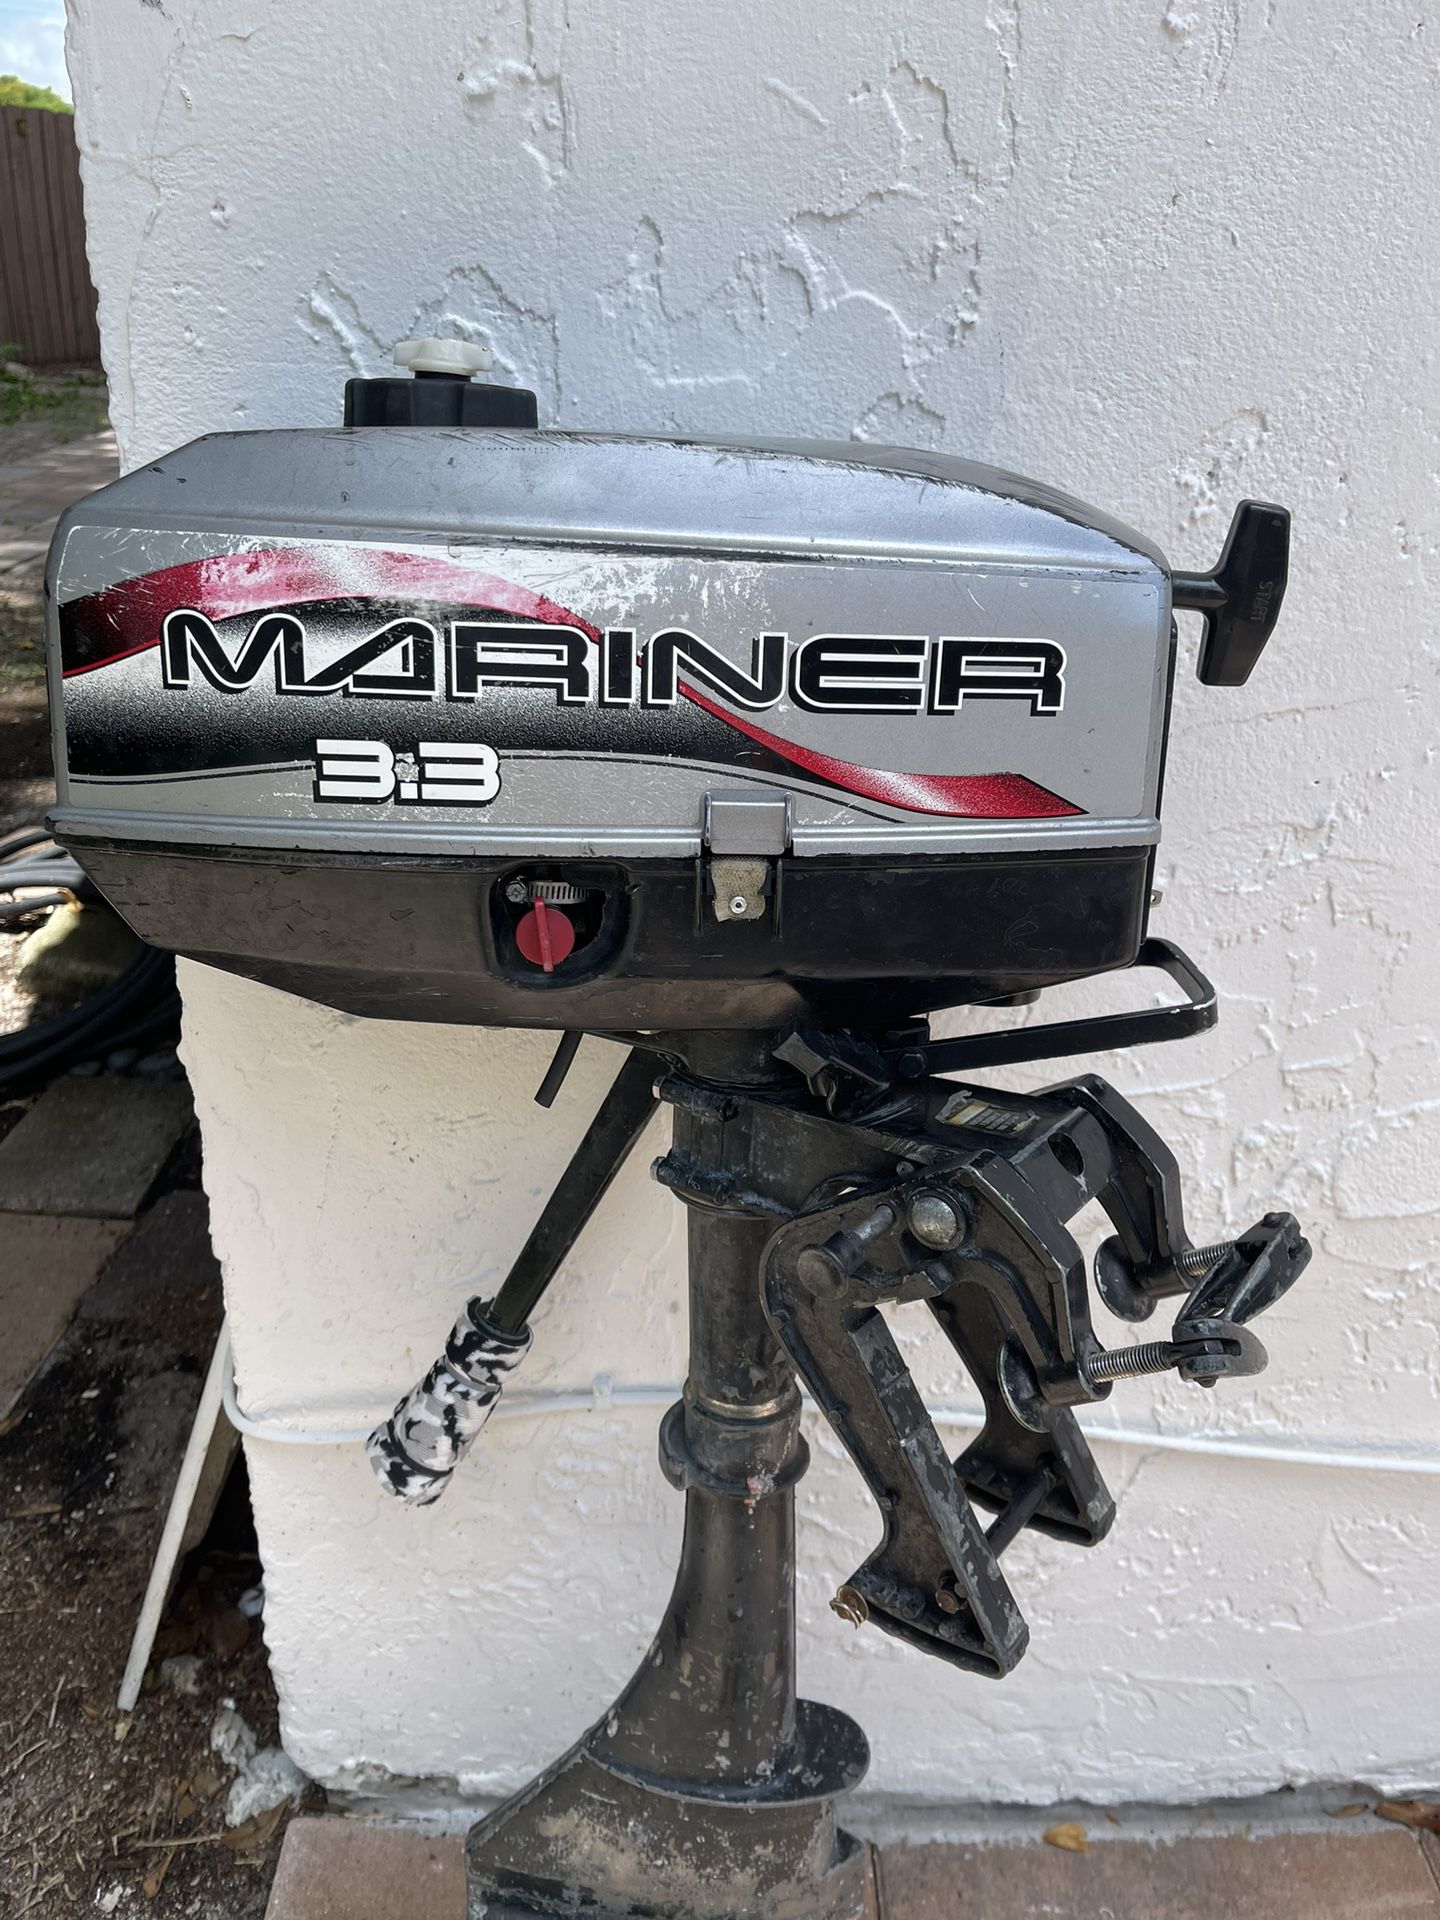 Mariner Boat Motor